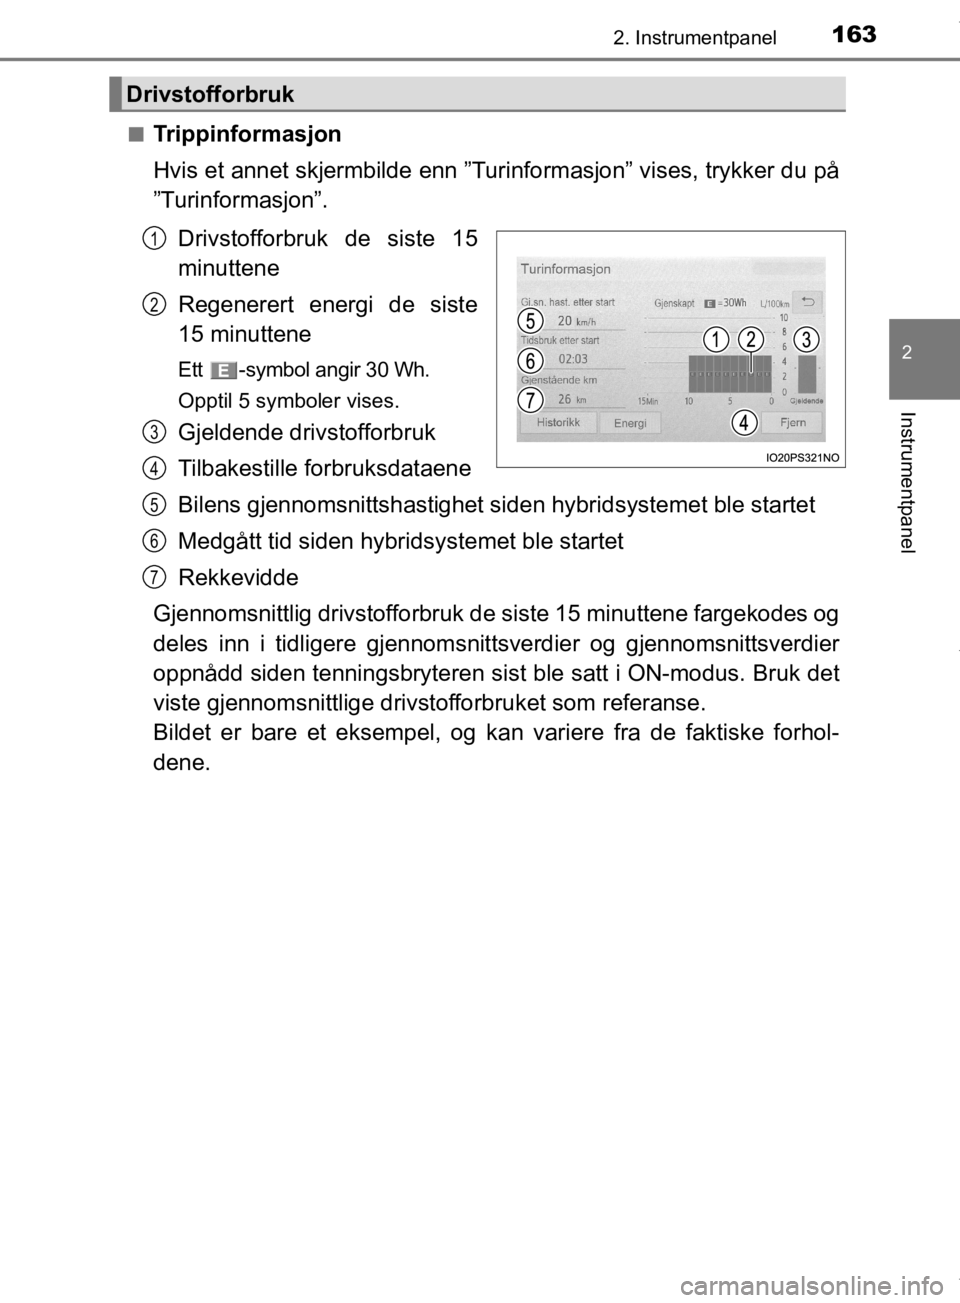 TOYOTA PRIUS 2020  Instruksjoner for bruk (in Norwegian) 1632. Instrumentpanel
2
Instrumentpanel
OM47D46NOn
Trippinformasjon
Hvis et annet skjermbilde enn ”Turinformasjon” vises, trykker du på
”Turinformasjon”.
Drivstofforbruk de siste 15
minuttene